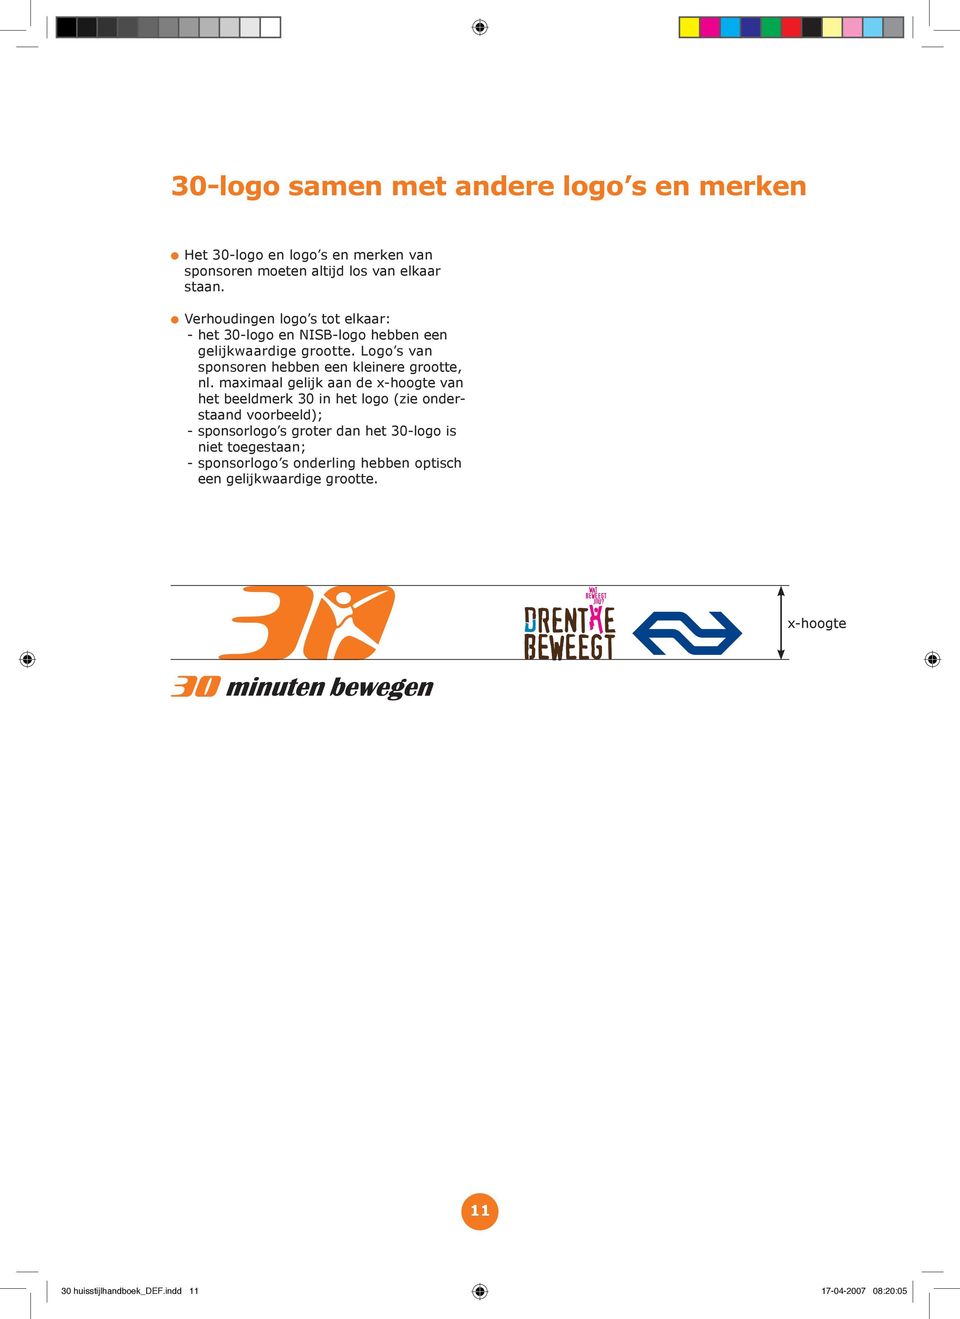 Logo s van sponsoren hebben een kleinere grootte, nl.